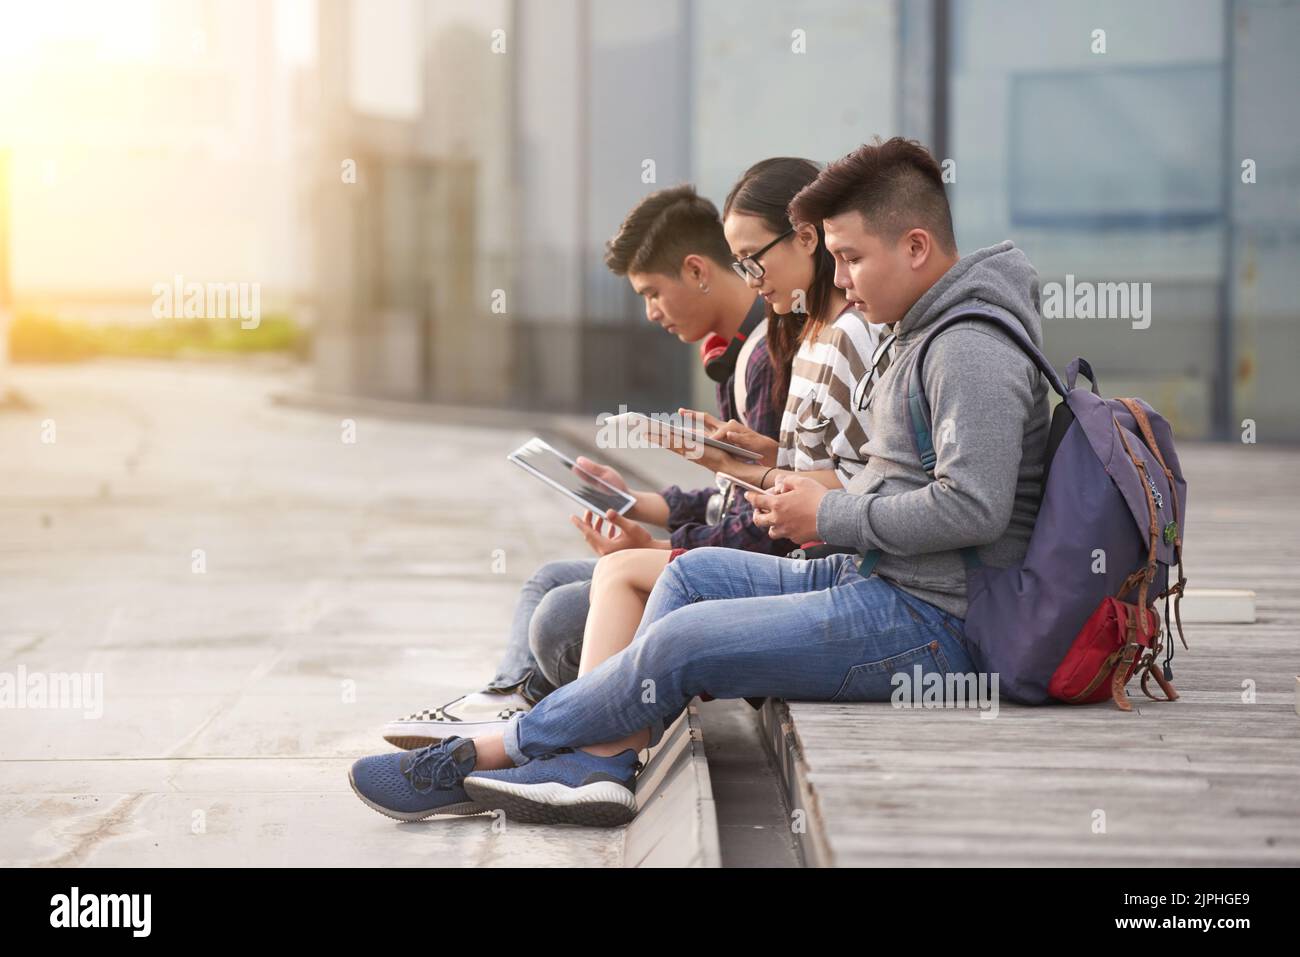 Gruppe von asiatischen Studenten in Casualwear sitzen im Freien und surfen Internet auf modernen digitalen Tablets, während sie auf den Beginn des Unterrichts warten, Fassade der modernen Hochschule auf dem Hintergrund Stockfoto